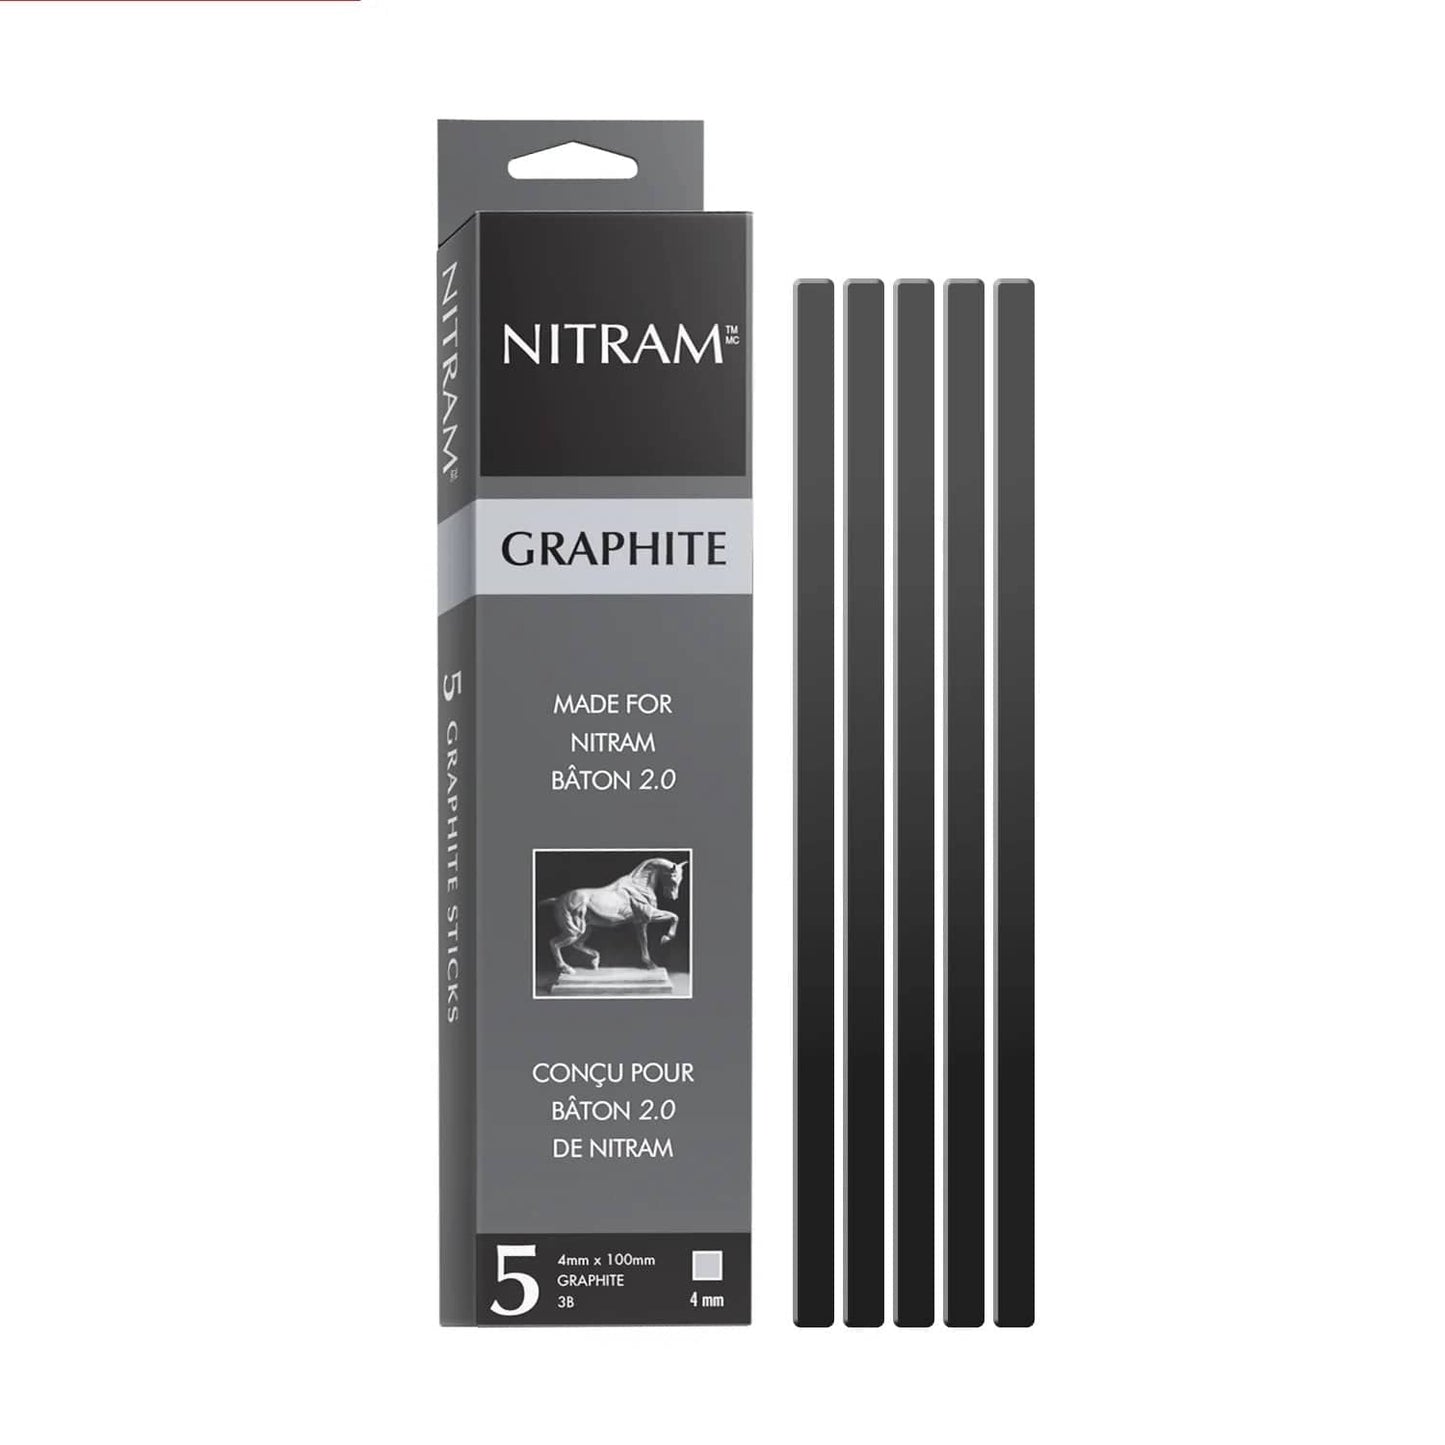 NITRAM Graphite Stick Nitram - Graphite Sticks - 5 Pieces - Item #700343